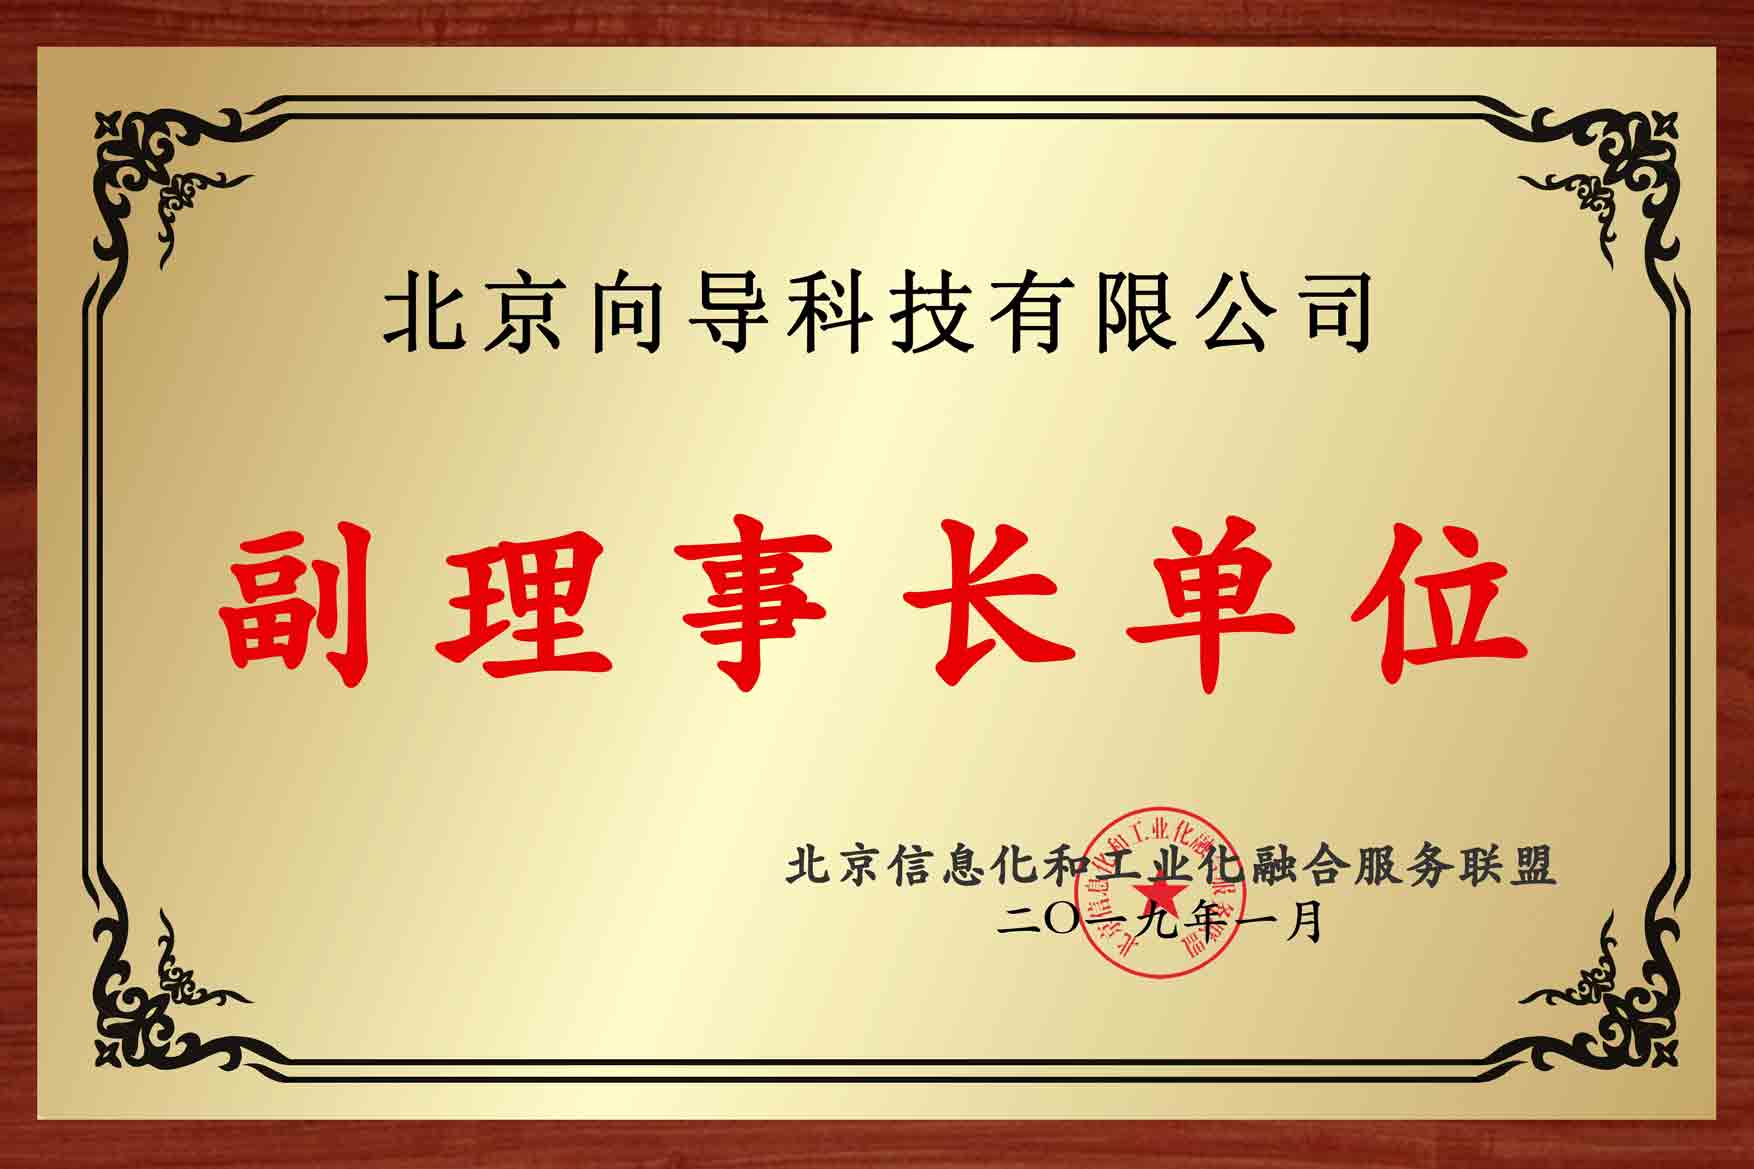 北京两化融合服务联盟副理事长单位